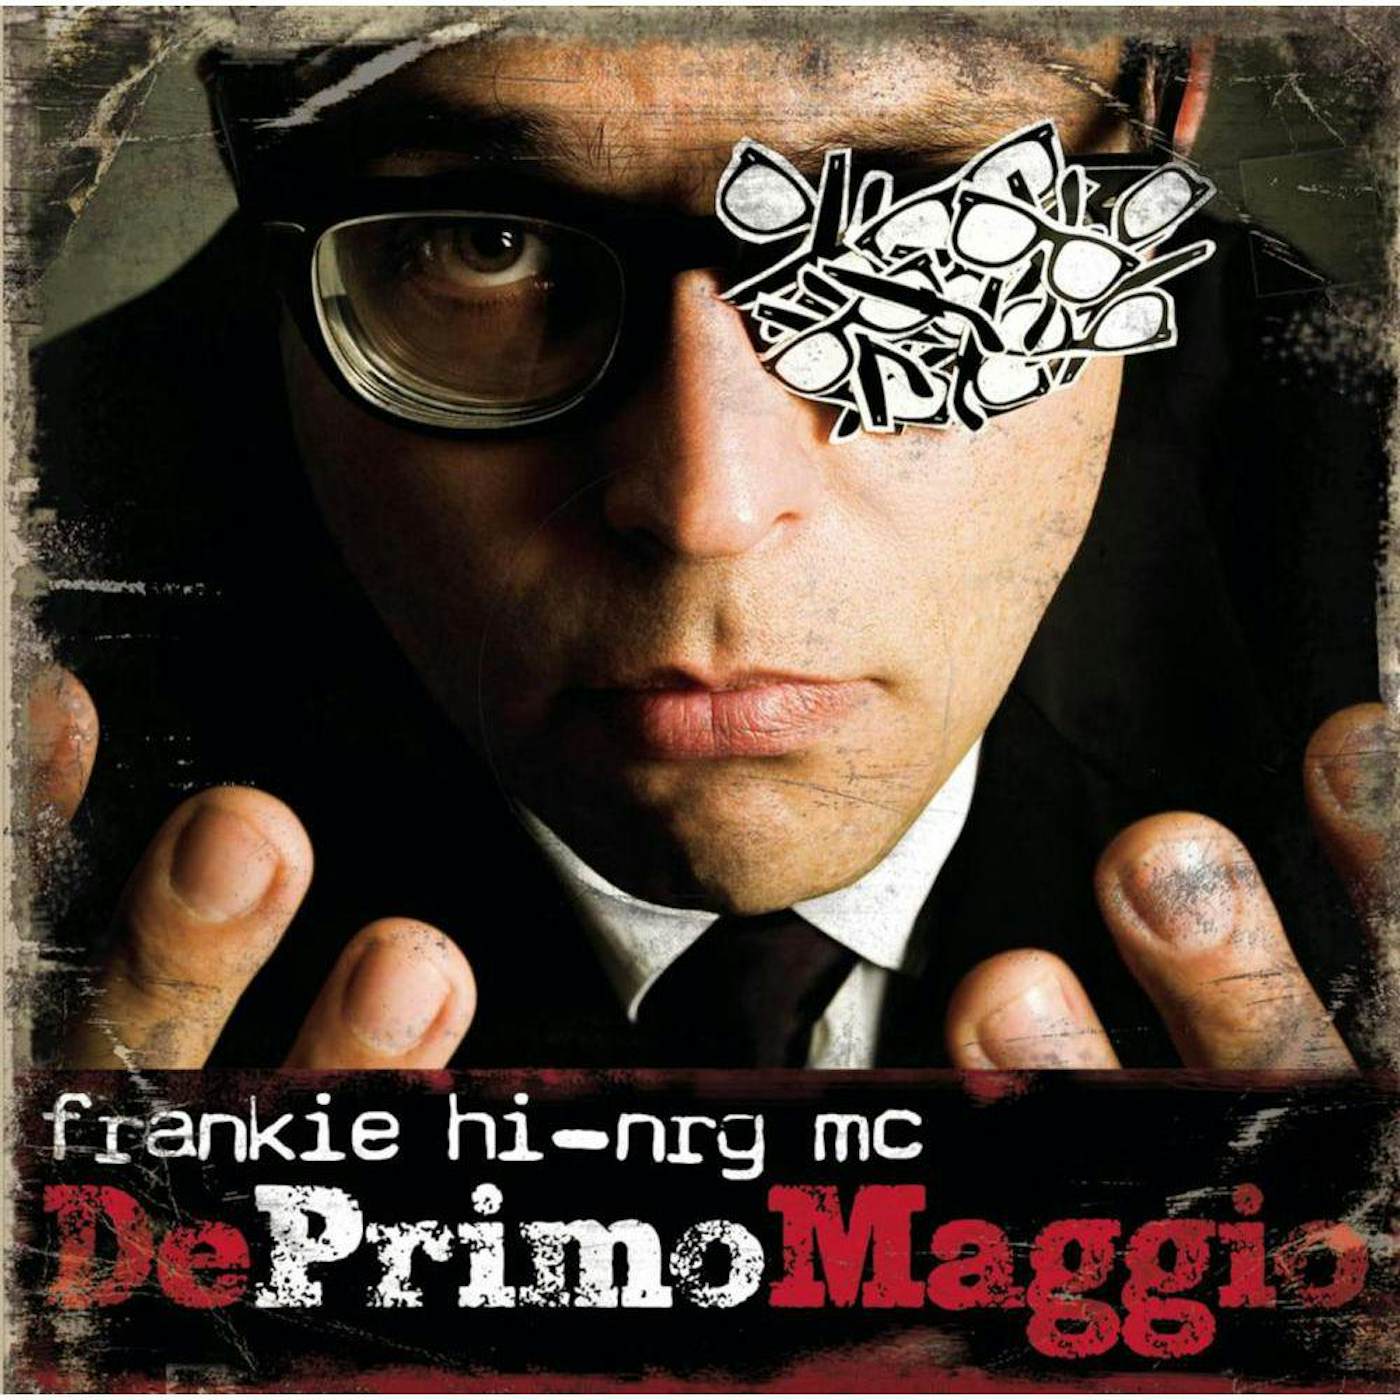 Frankie hi-nrg mc Deprimomaggio (Red) Vinyl Record